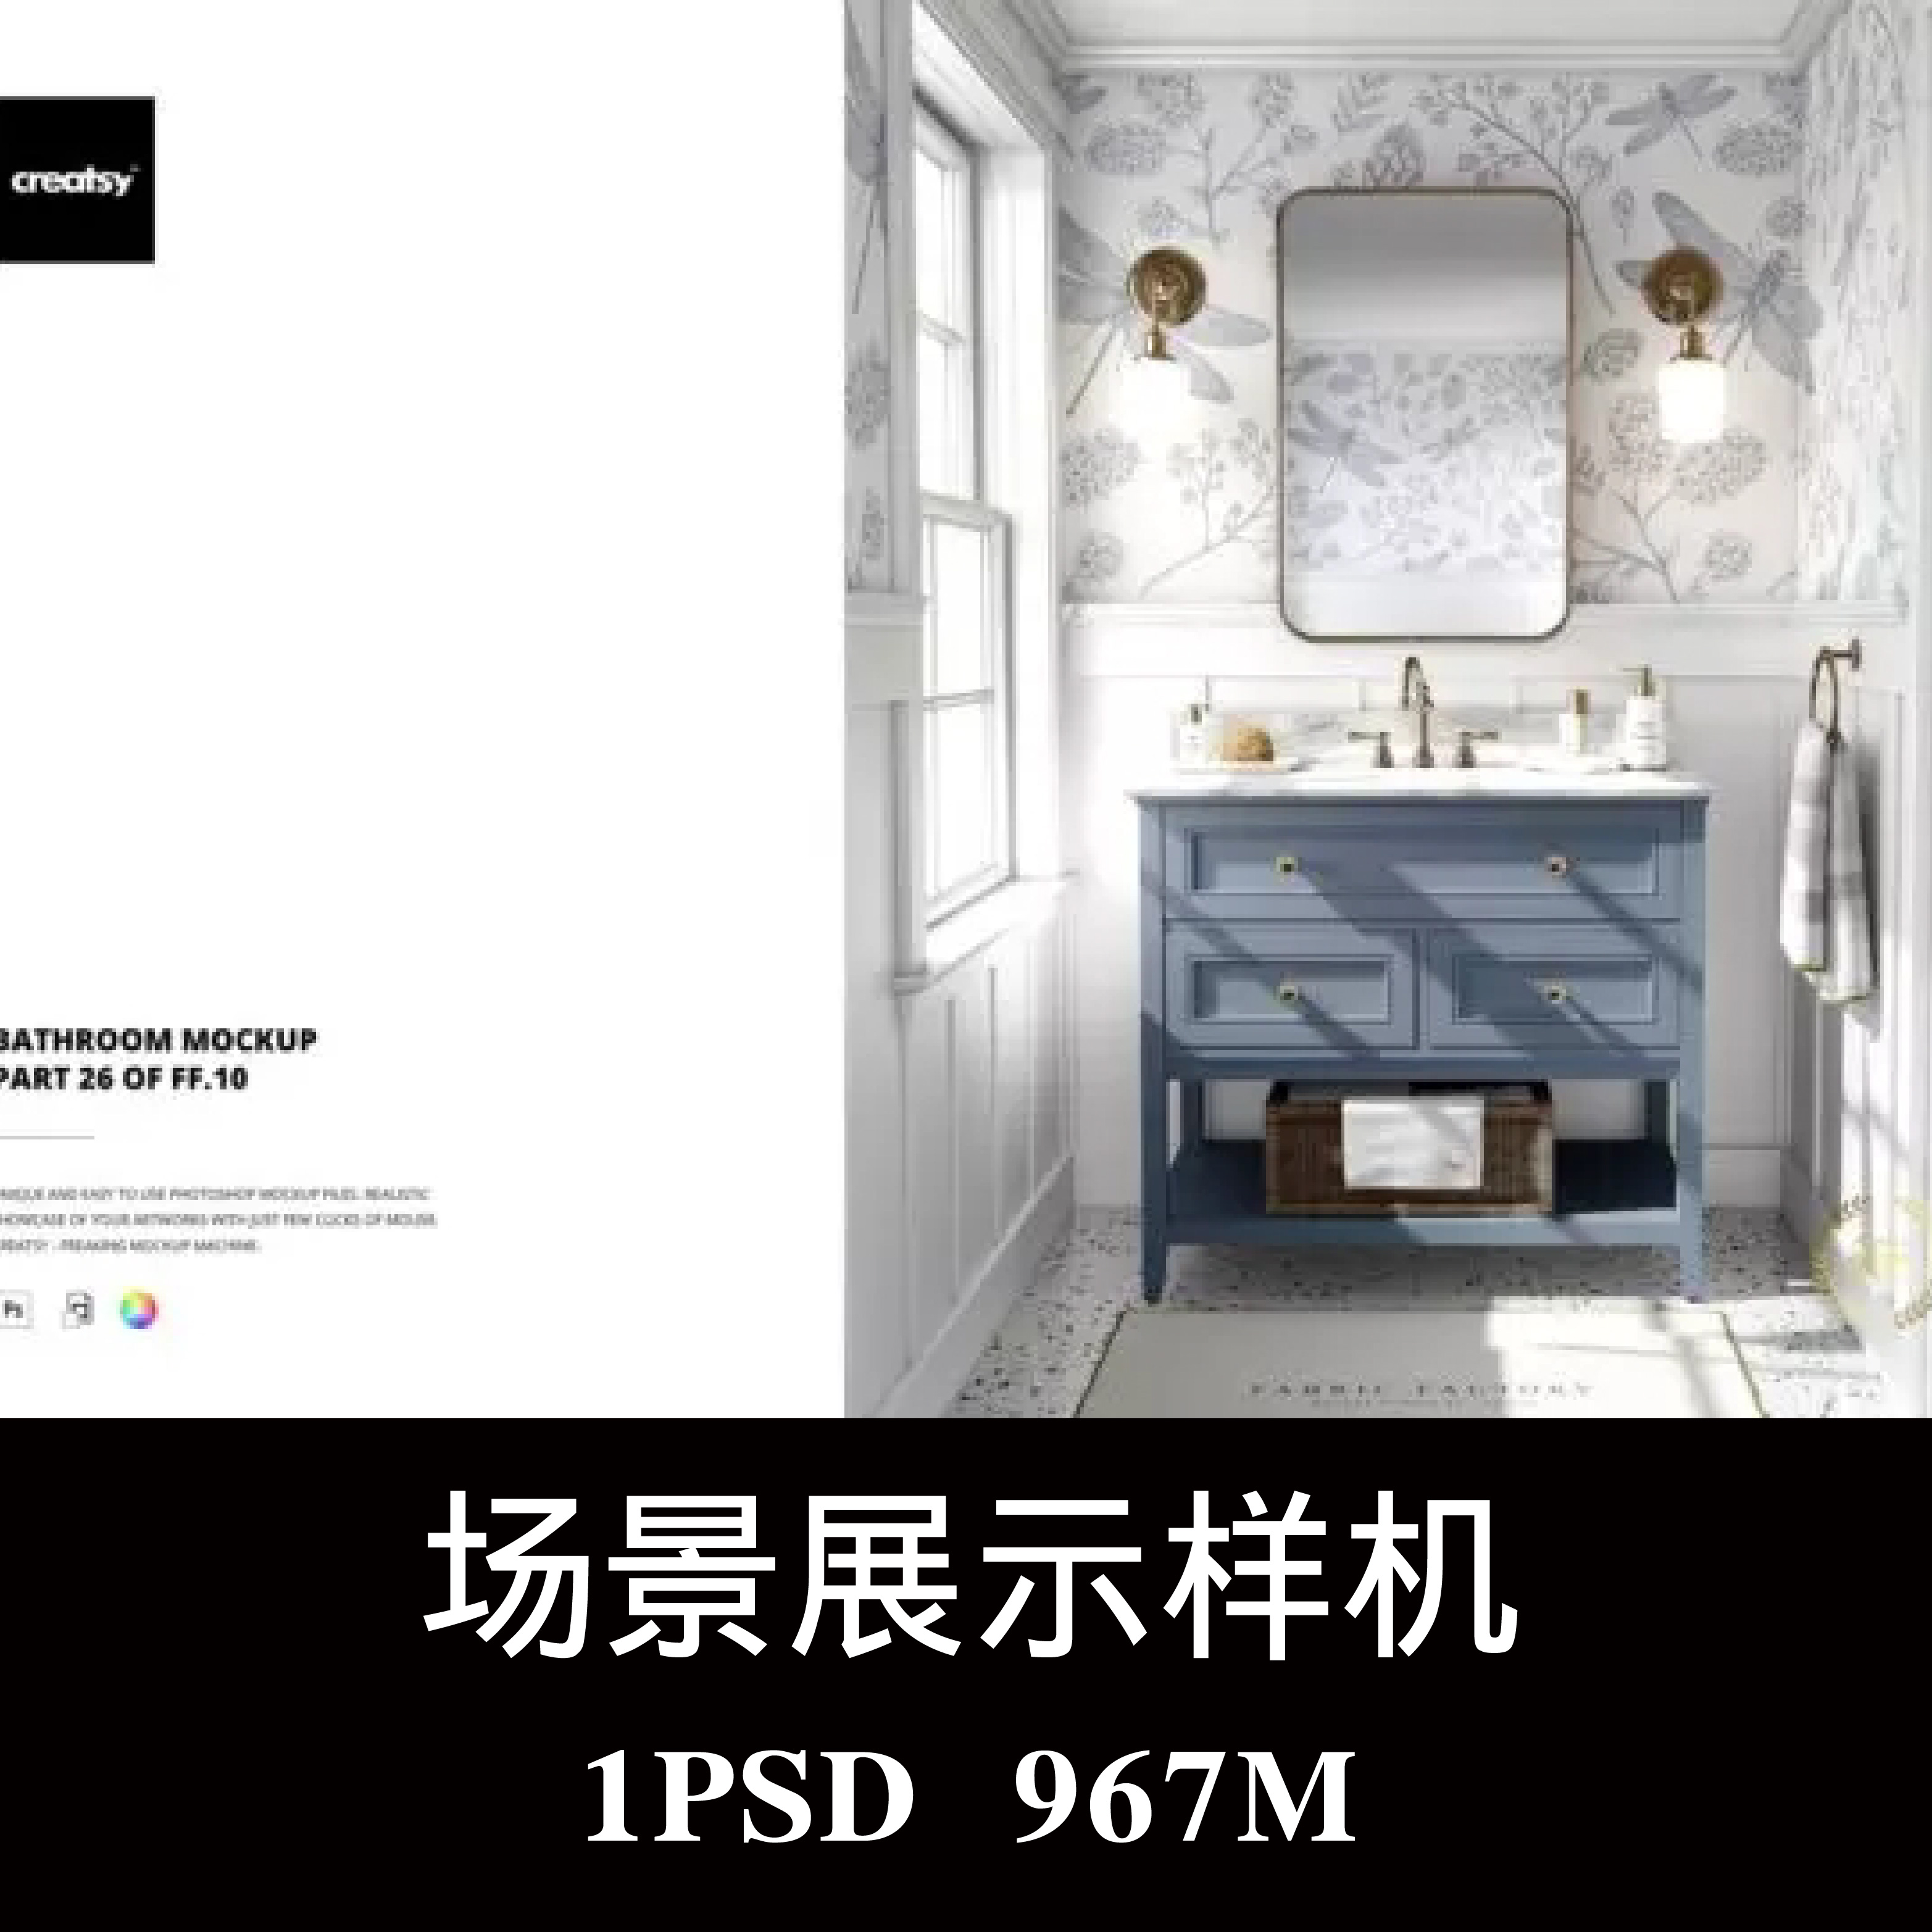 浴室墙纸瓷砖地毯毛巾柜子样机PSD贴图效果图3D智能图层模板素材